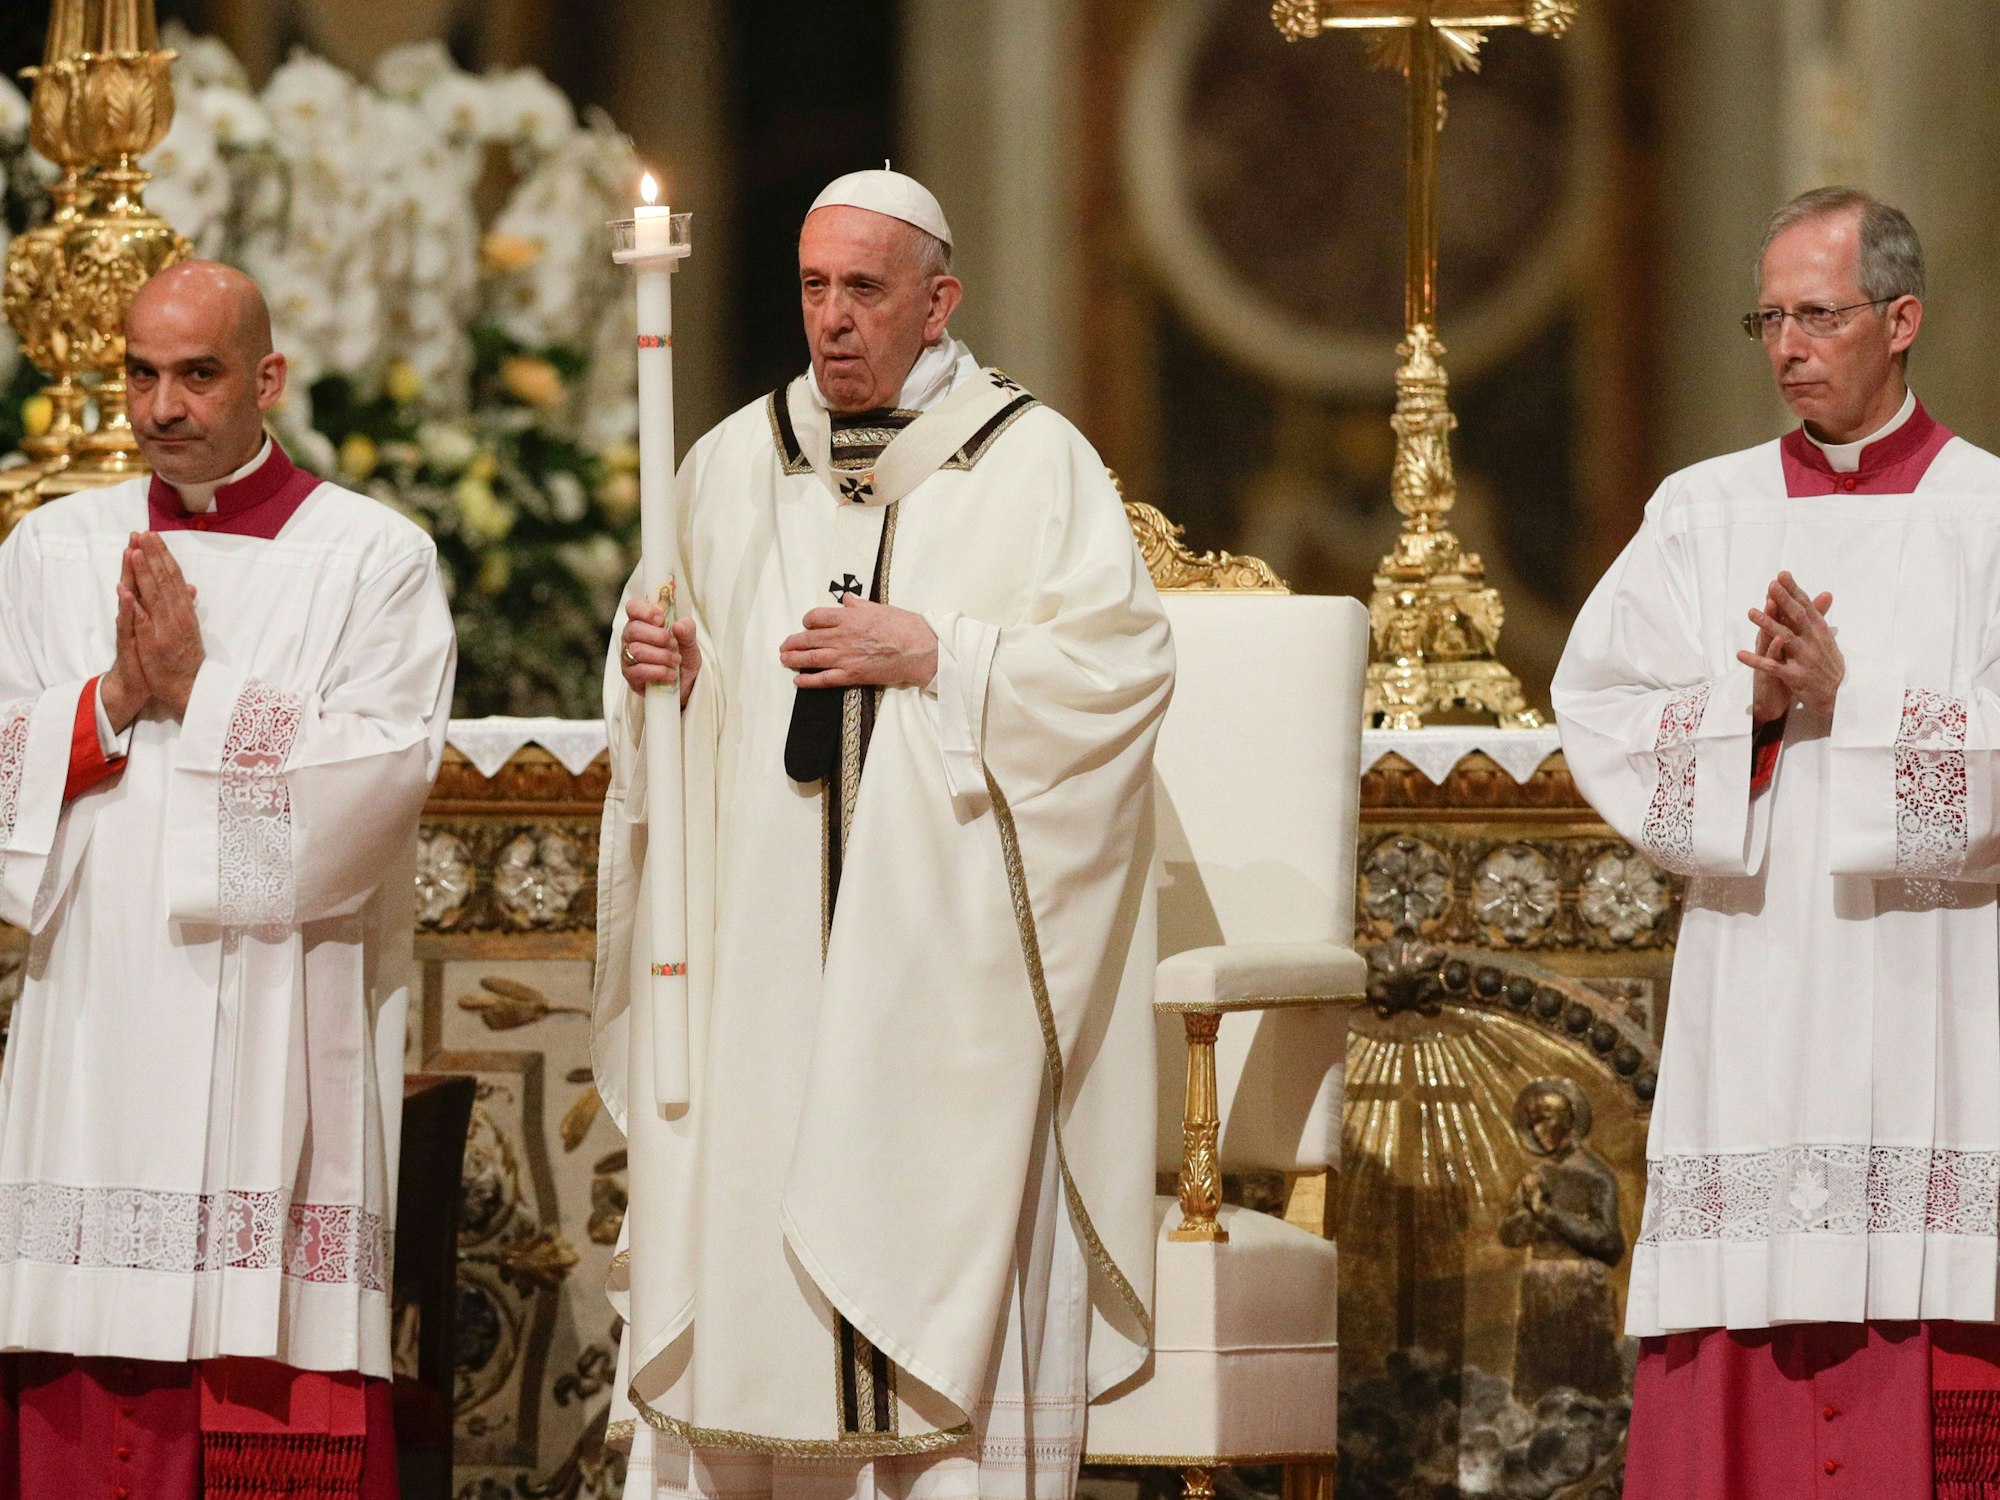 Papst Franziskus hält eine Kerze, während er der feierlichen Osternacht im Petersdom vorsitzt. Er trägt ein weißes Gewand.